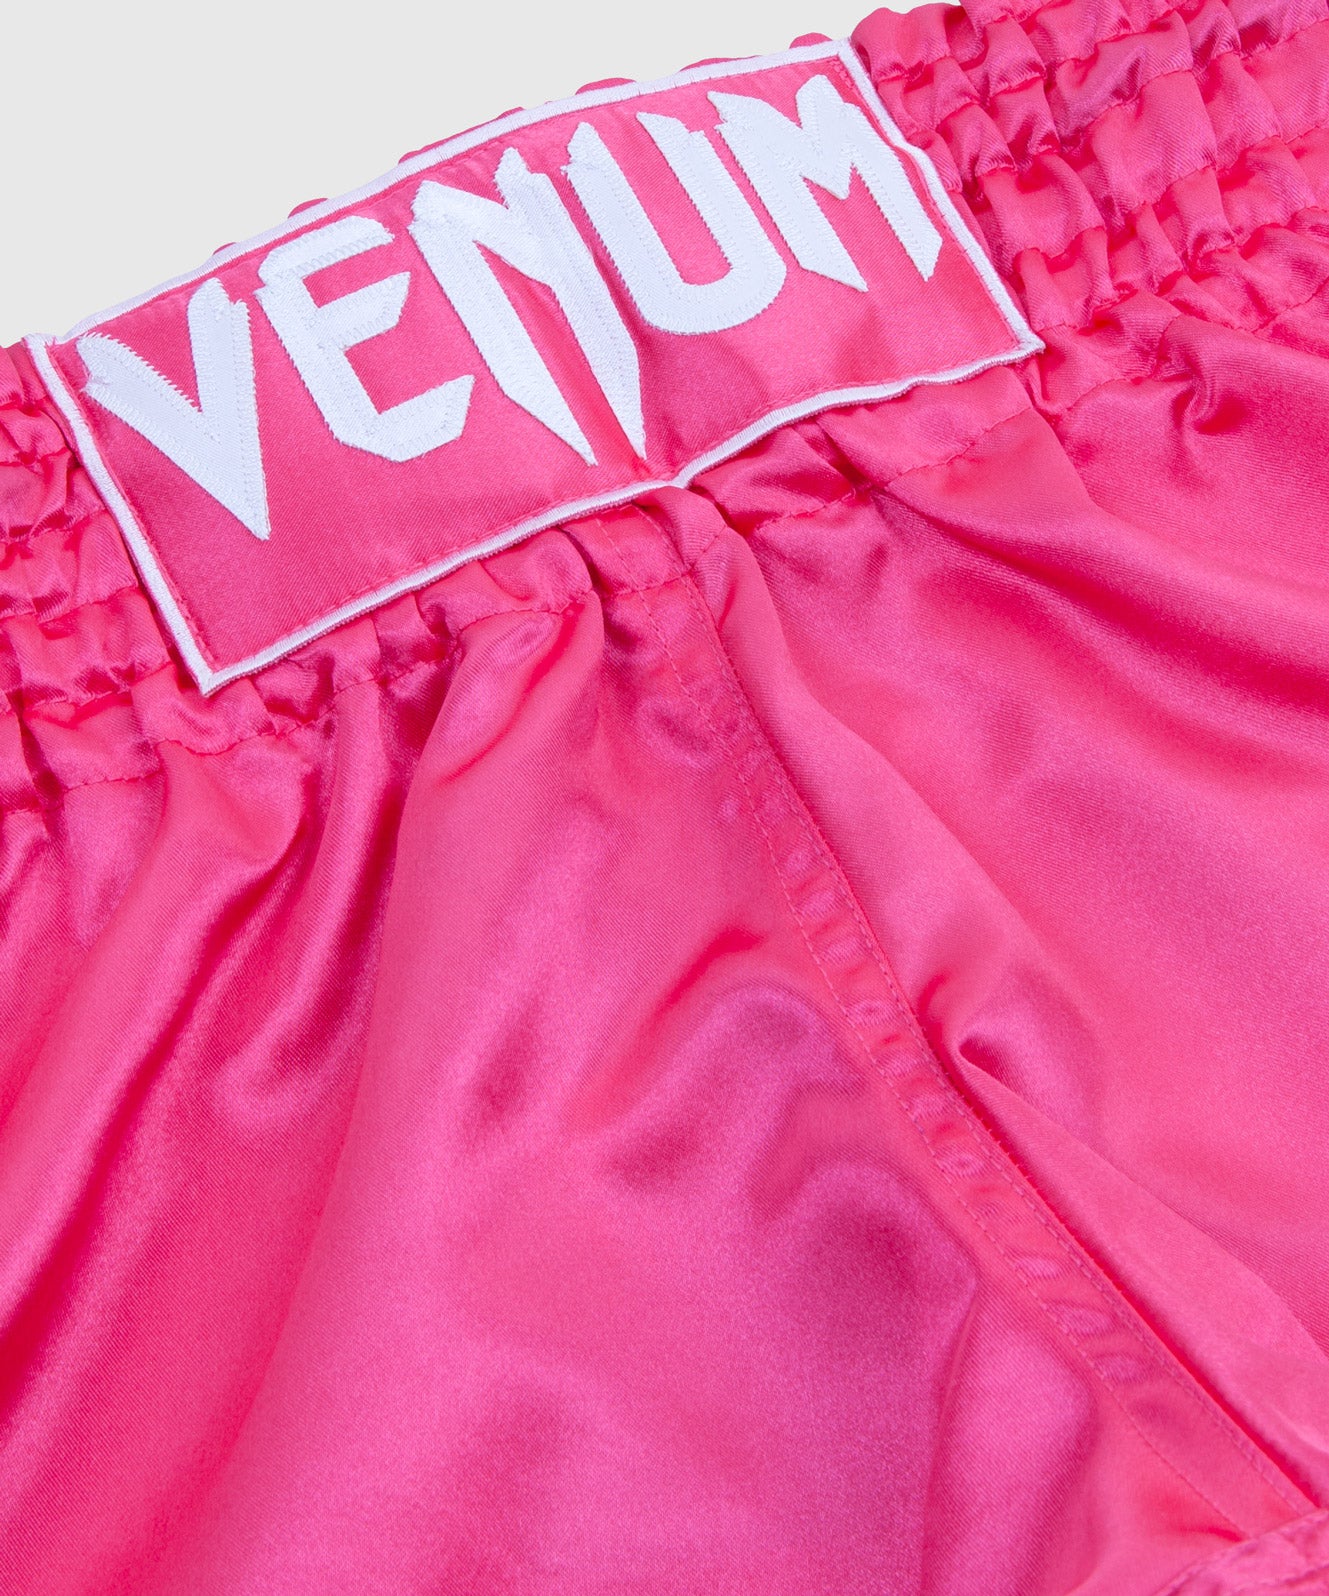 Venum Classic Muay Thai Short - Rose/Blanc